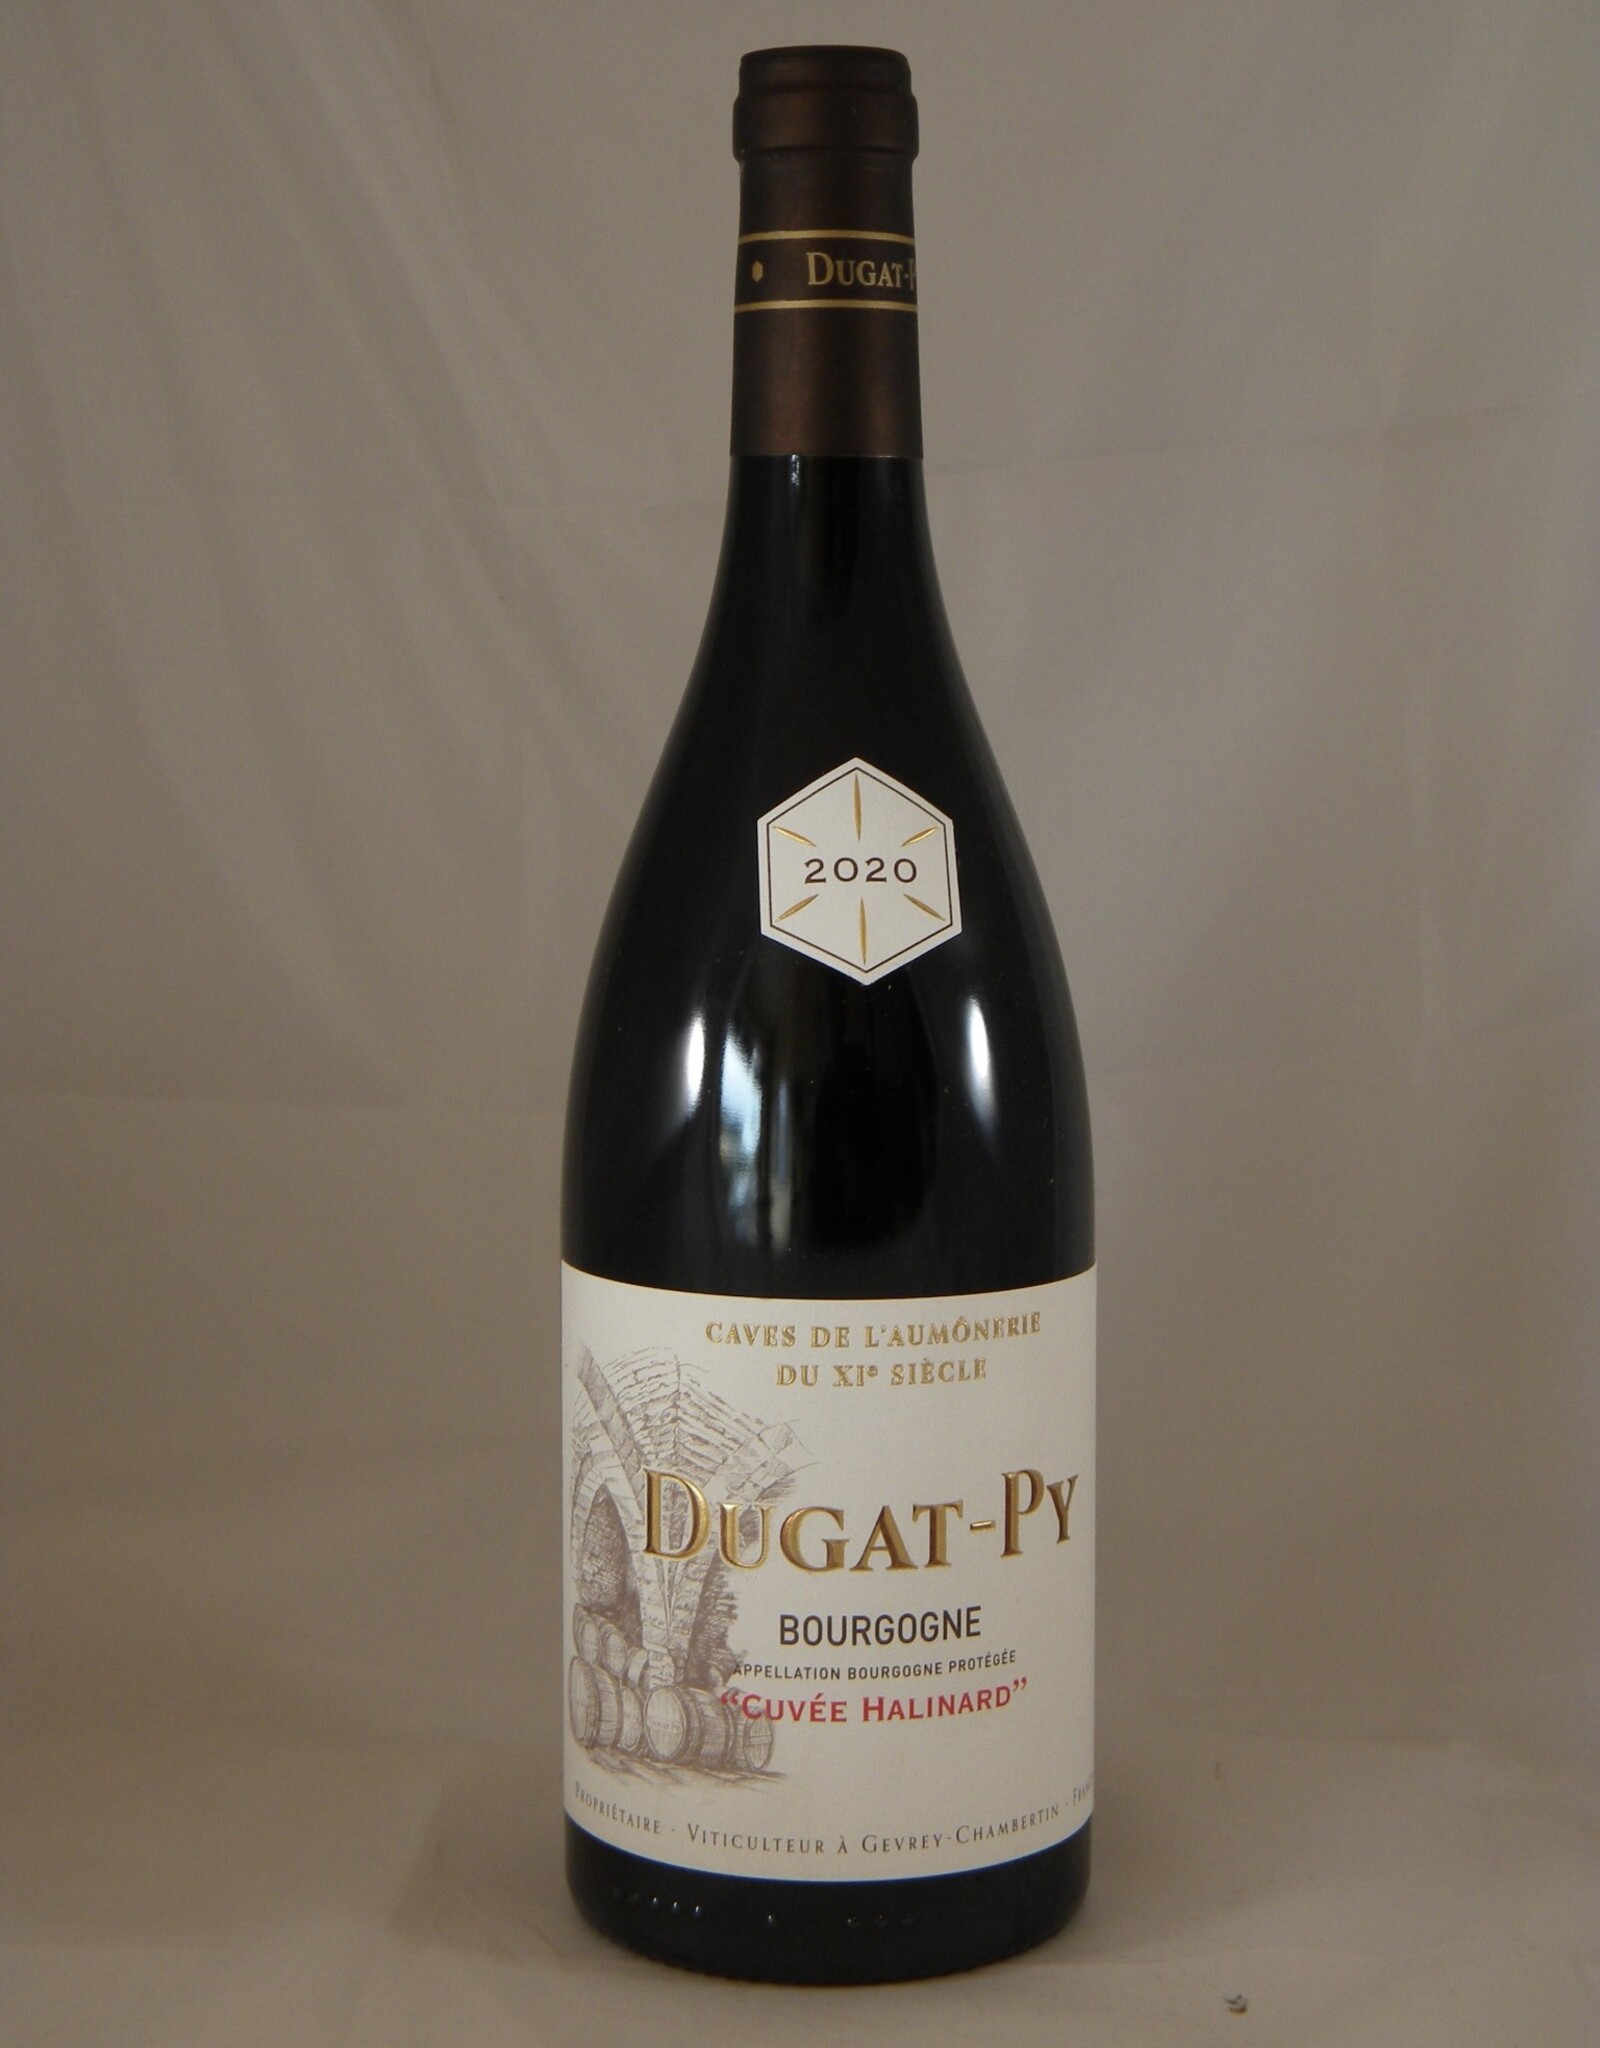 Dugat-Py Dugat-Py Bourgogne Rouge Cuvee Halinard 2020